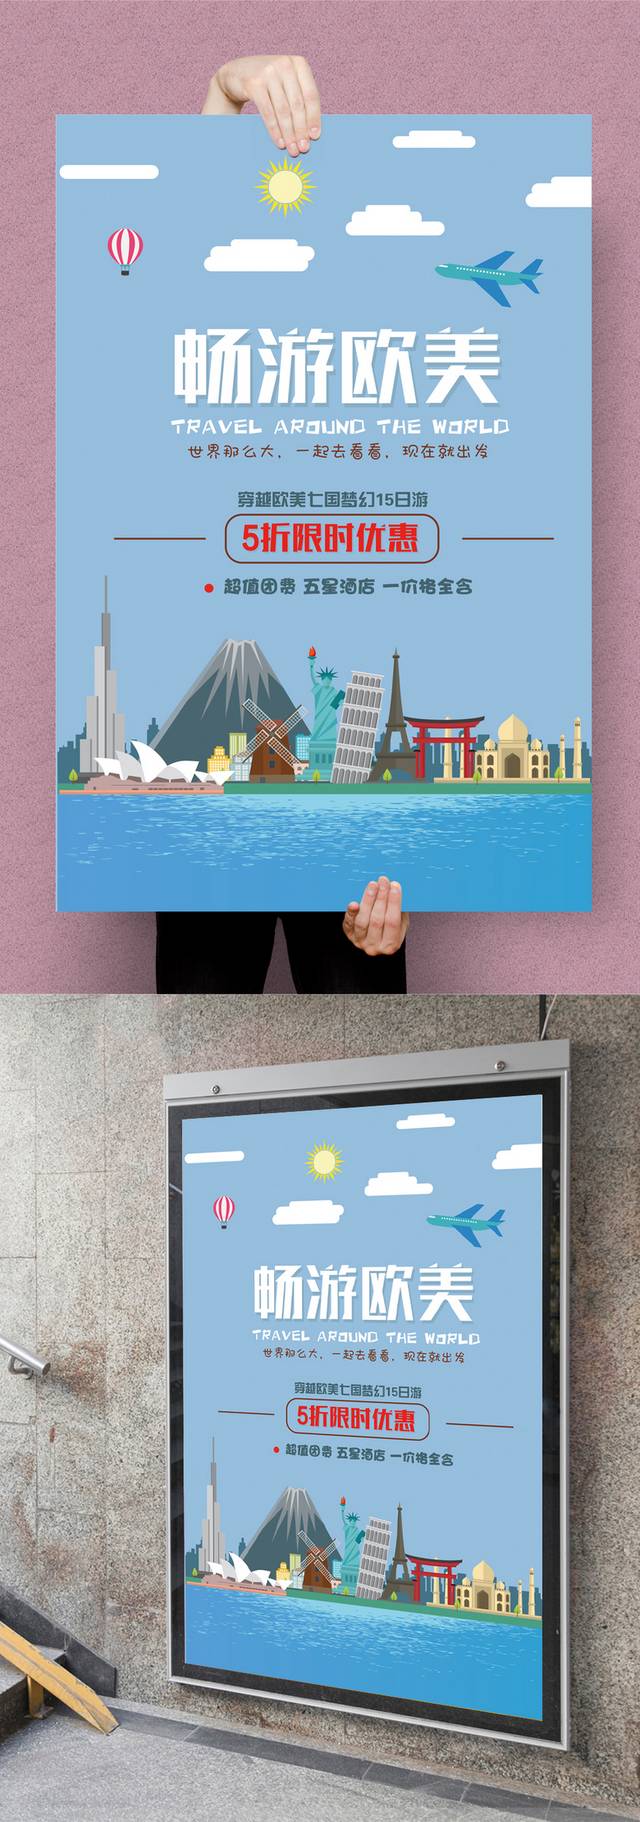 环游世界旅游海报设计模板